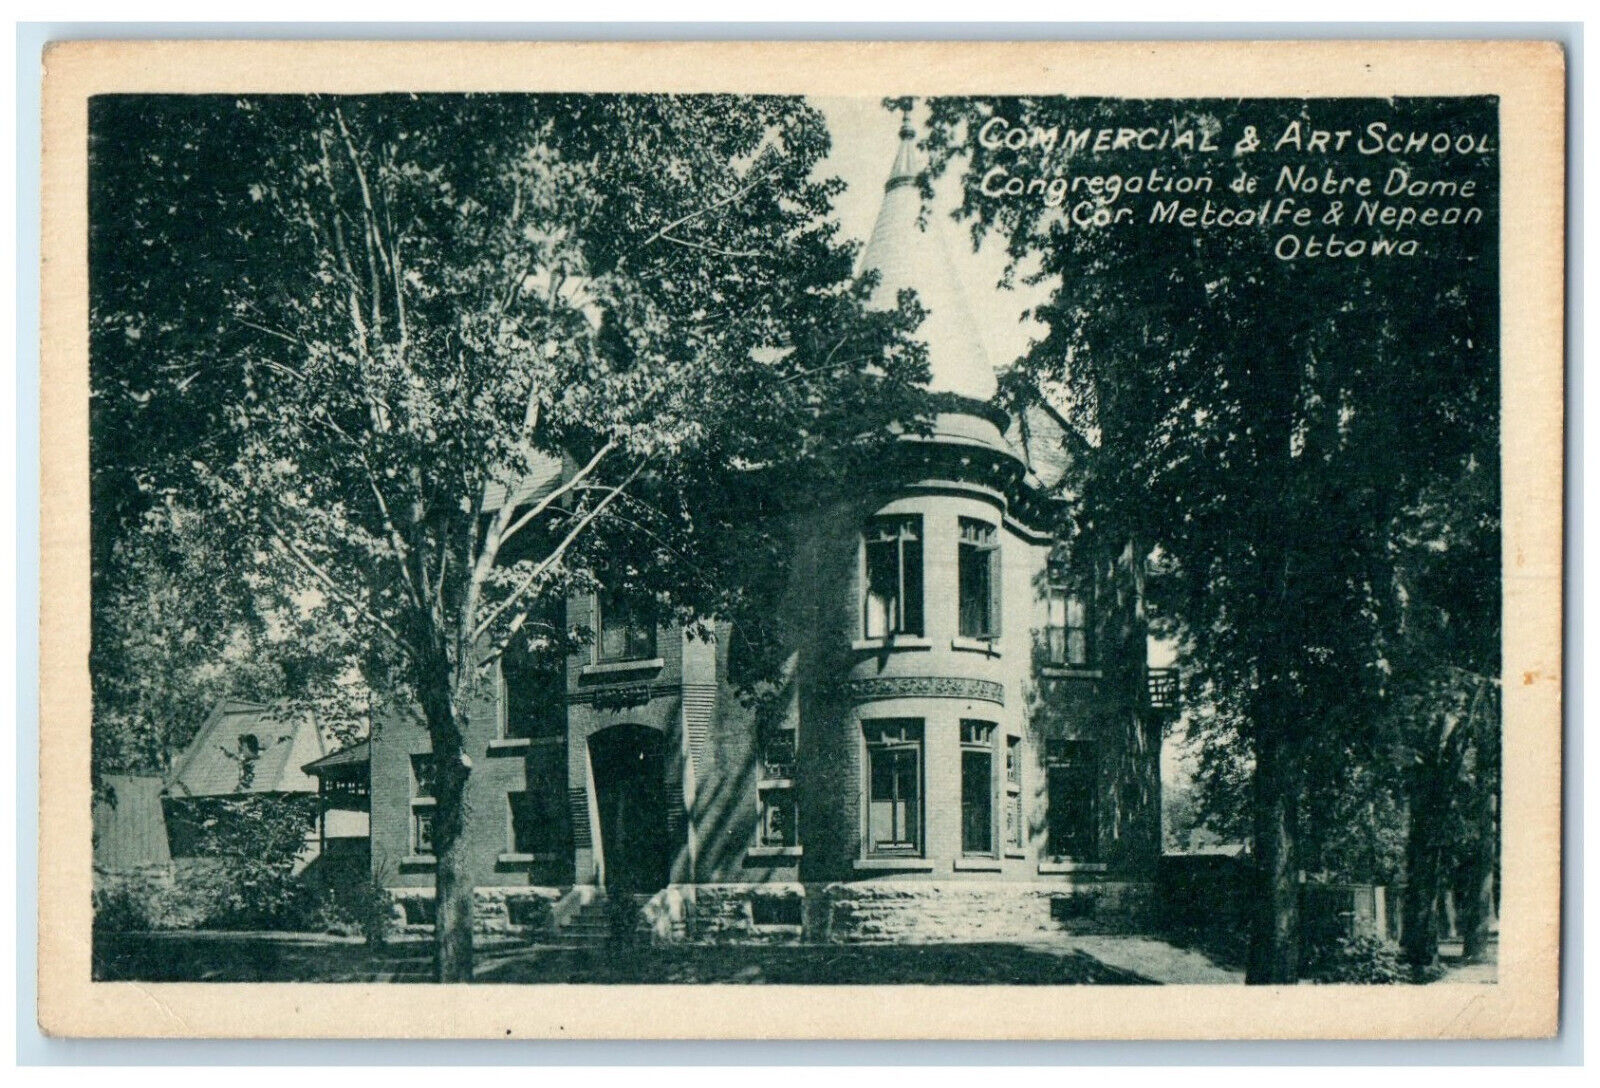 c1930's Commercial & Art School Congregation de Notre Dame Ottawa Postcard